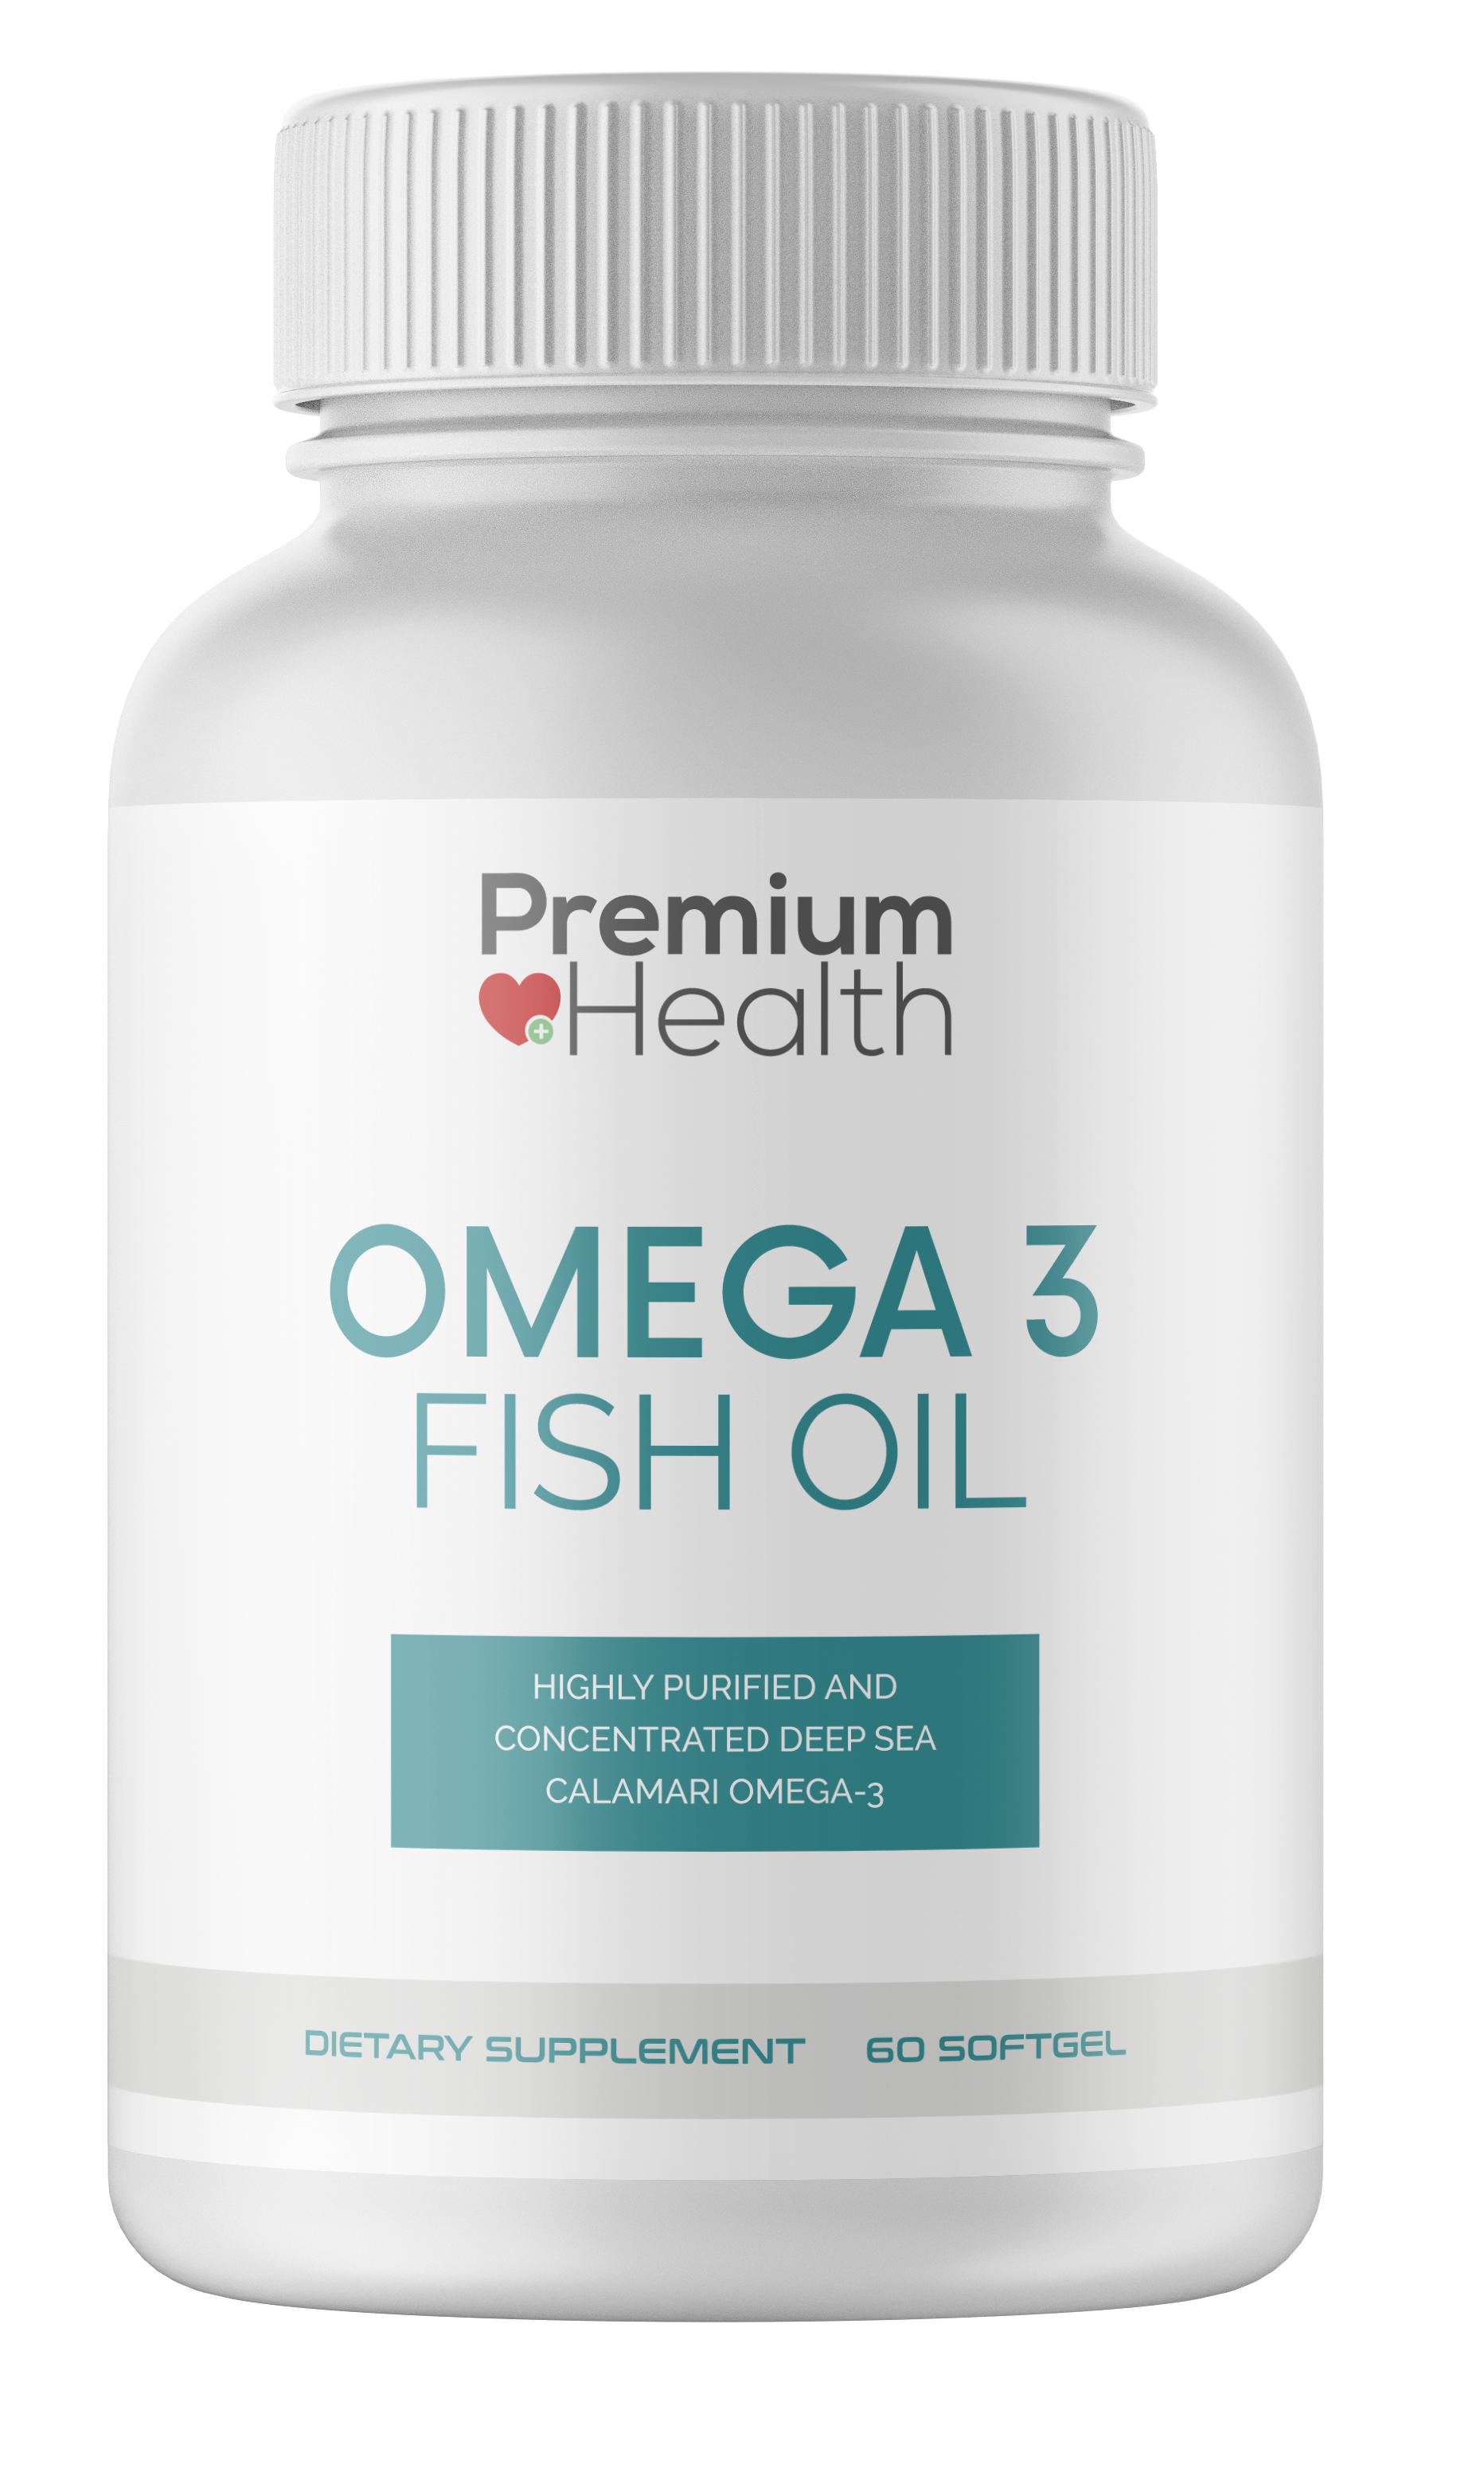 2 Omega 3 Fish Oil - 2 Bottles -120 Softgel